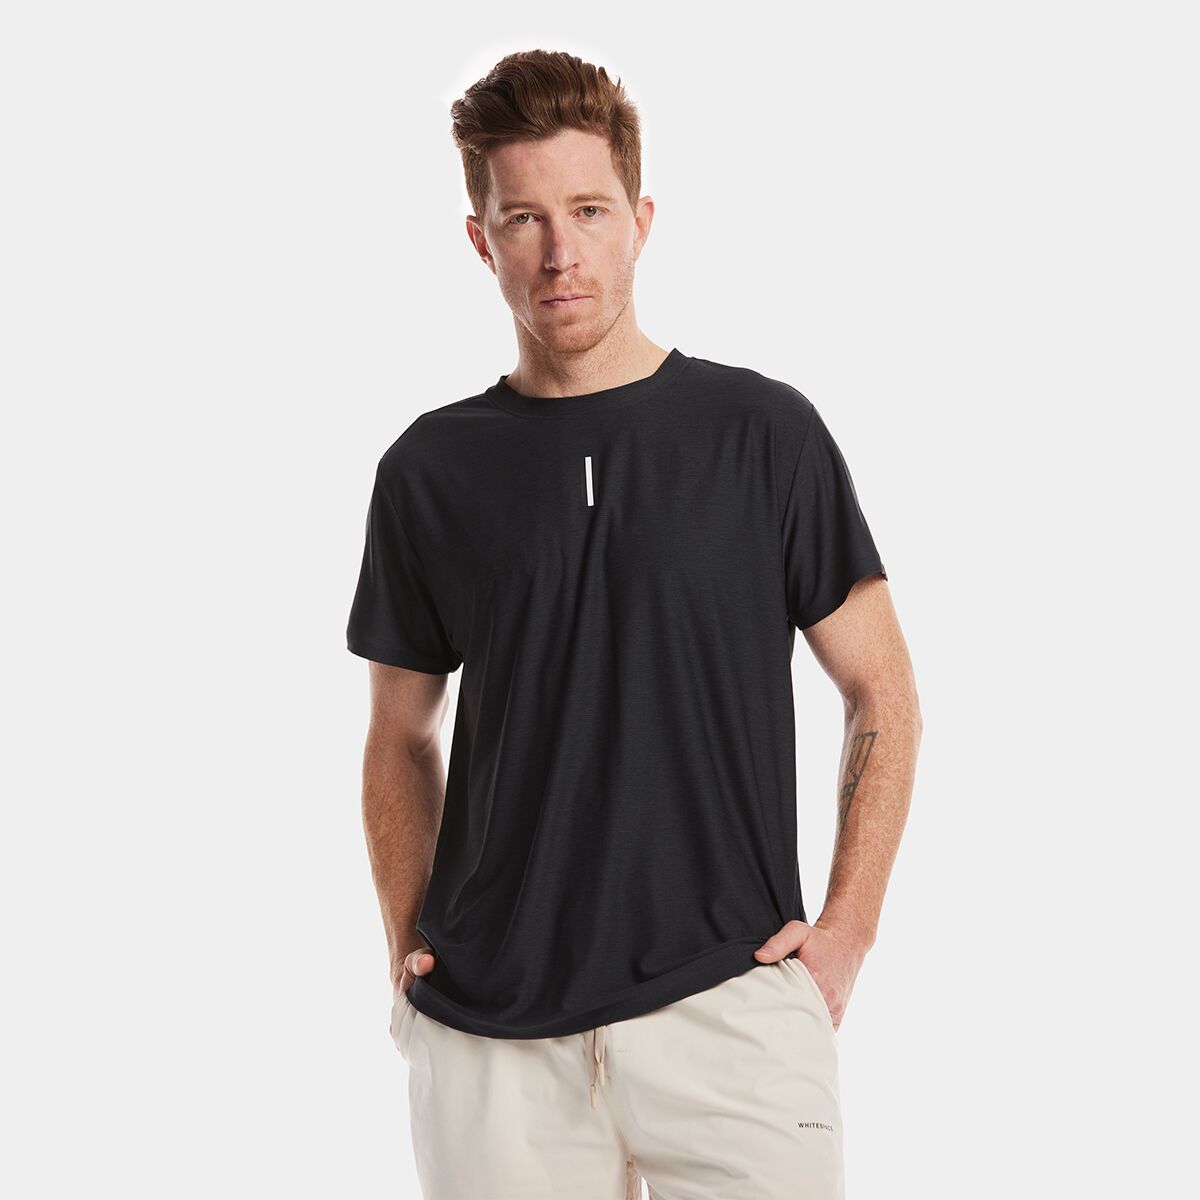 WHITESPACE Performance Short-Sleeve T-Shirt - Men's